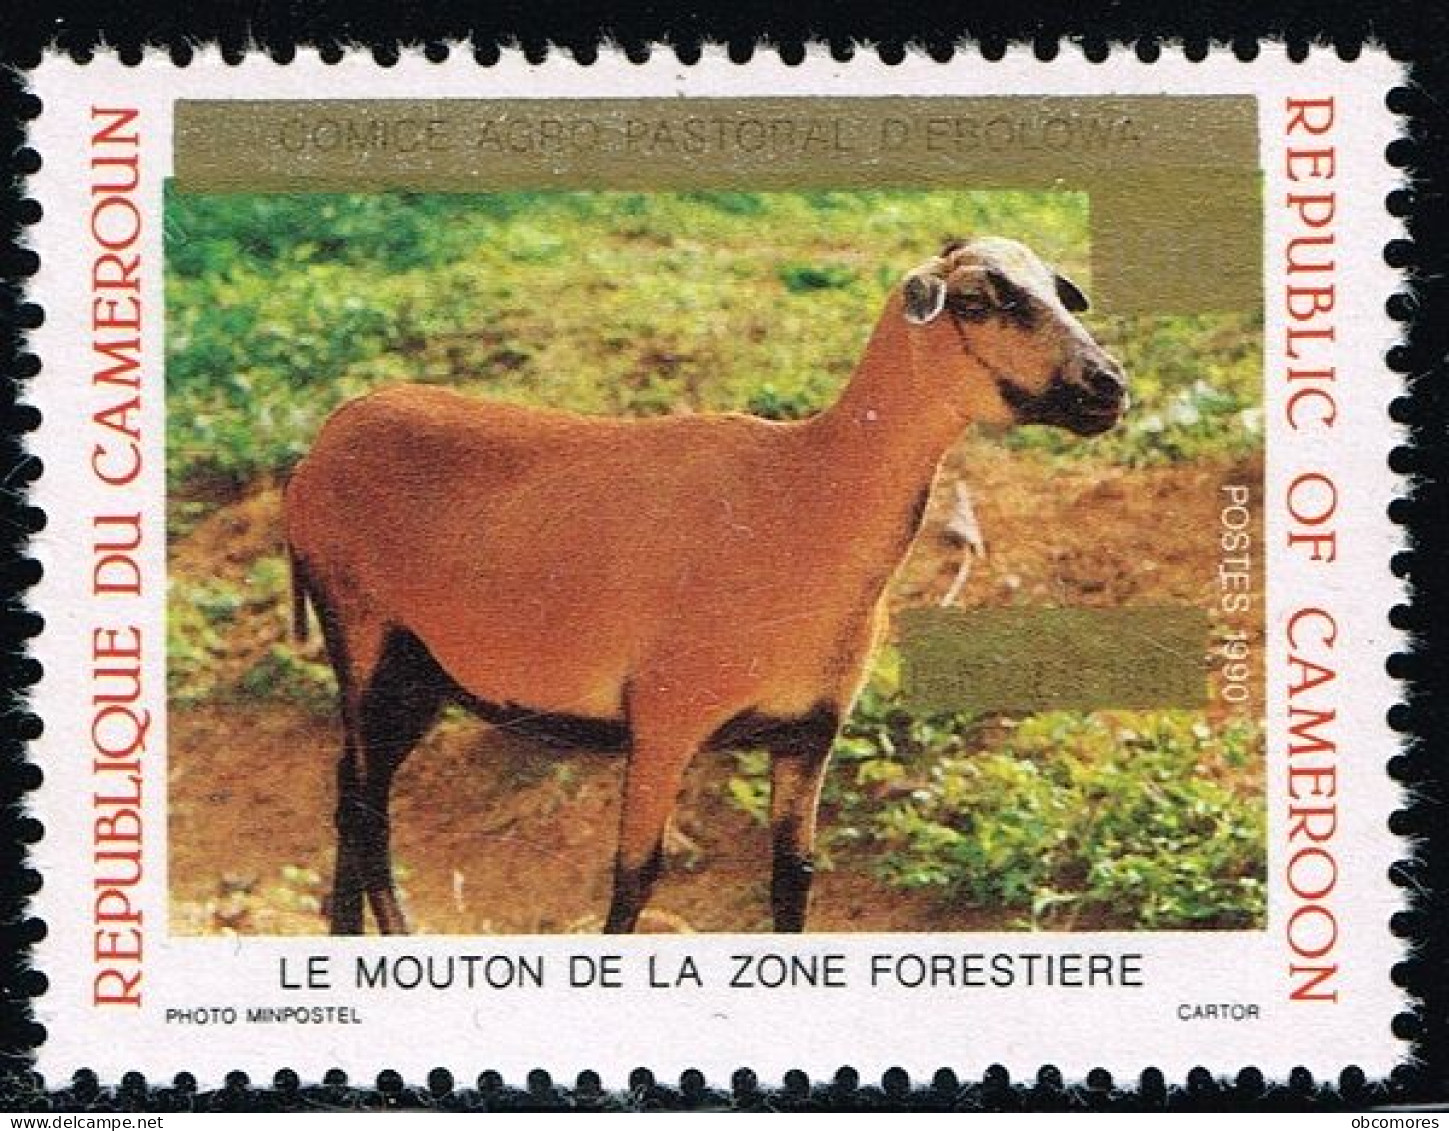 CAMEROUN Cameroon Kamerun 1993 Mouton Sheep Mi 1199 Sc 895 Overprint But Without New Value 125 F! RARE - MNH ** - Cameroon (1960-...)